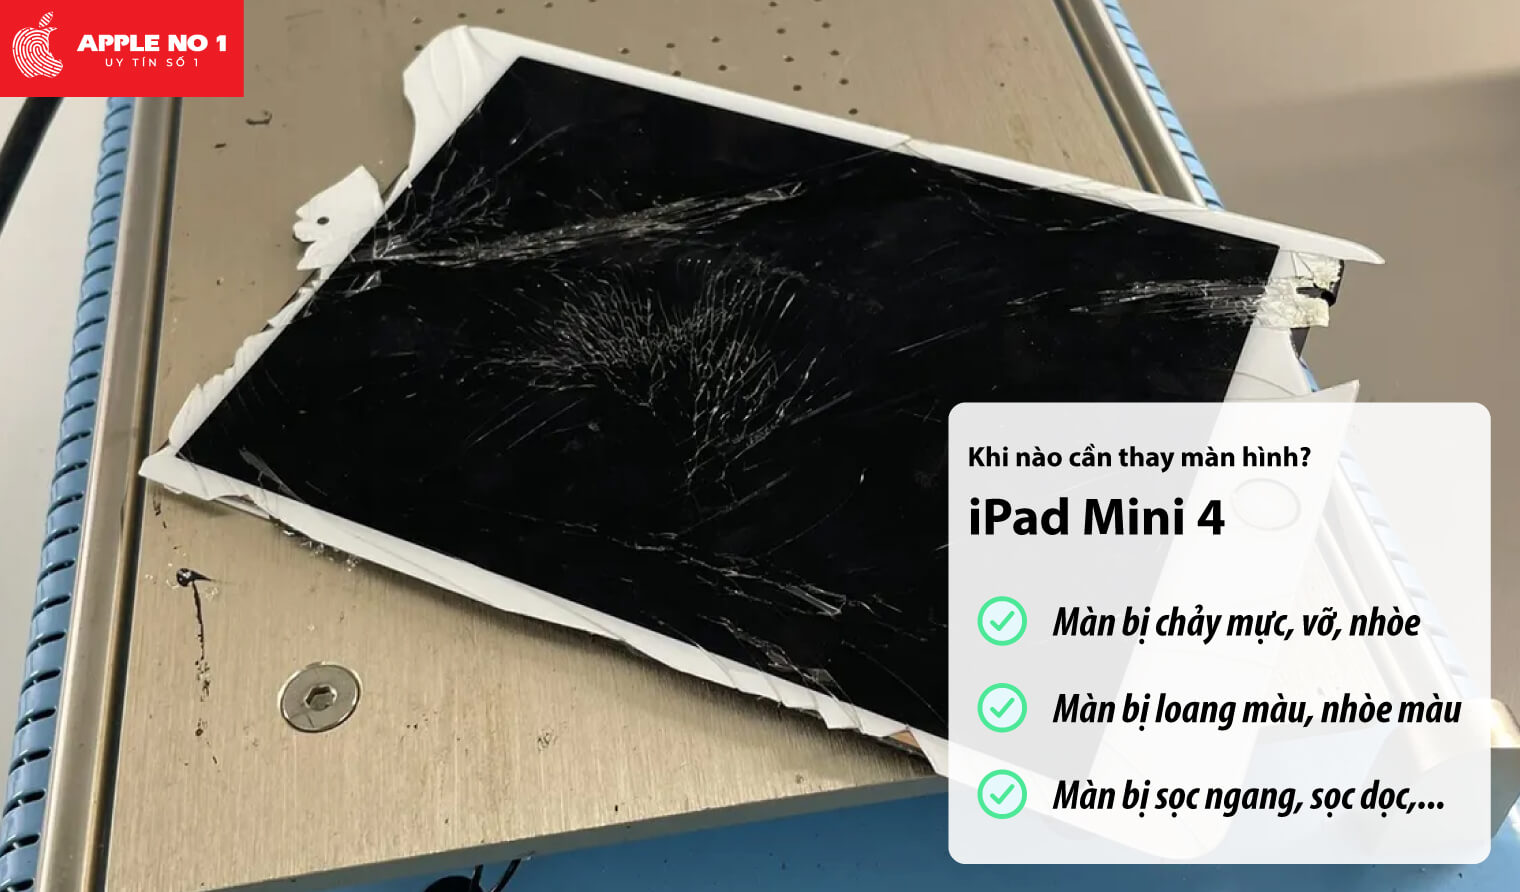 Thay màn hình iPad mini 4 khi nào?